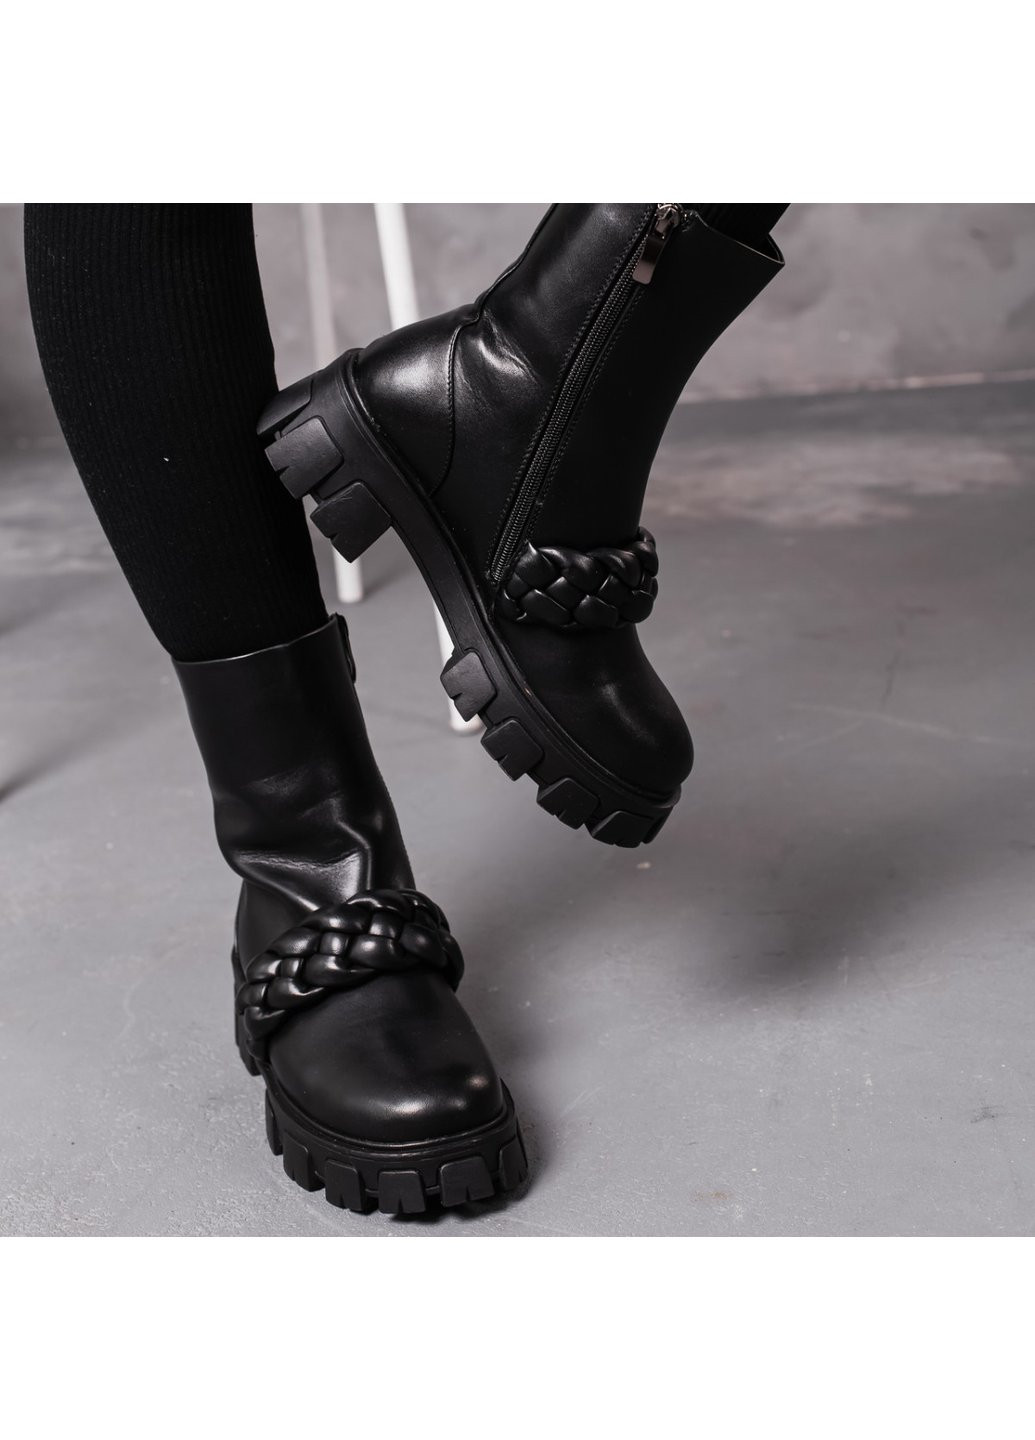 Зимние ботинки женские зимние celeste 3398 235 черный Fashion из искусственной кожи